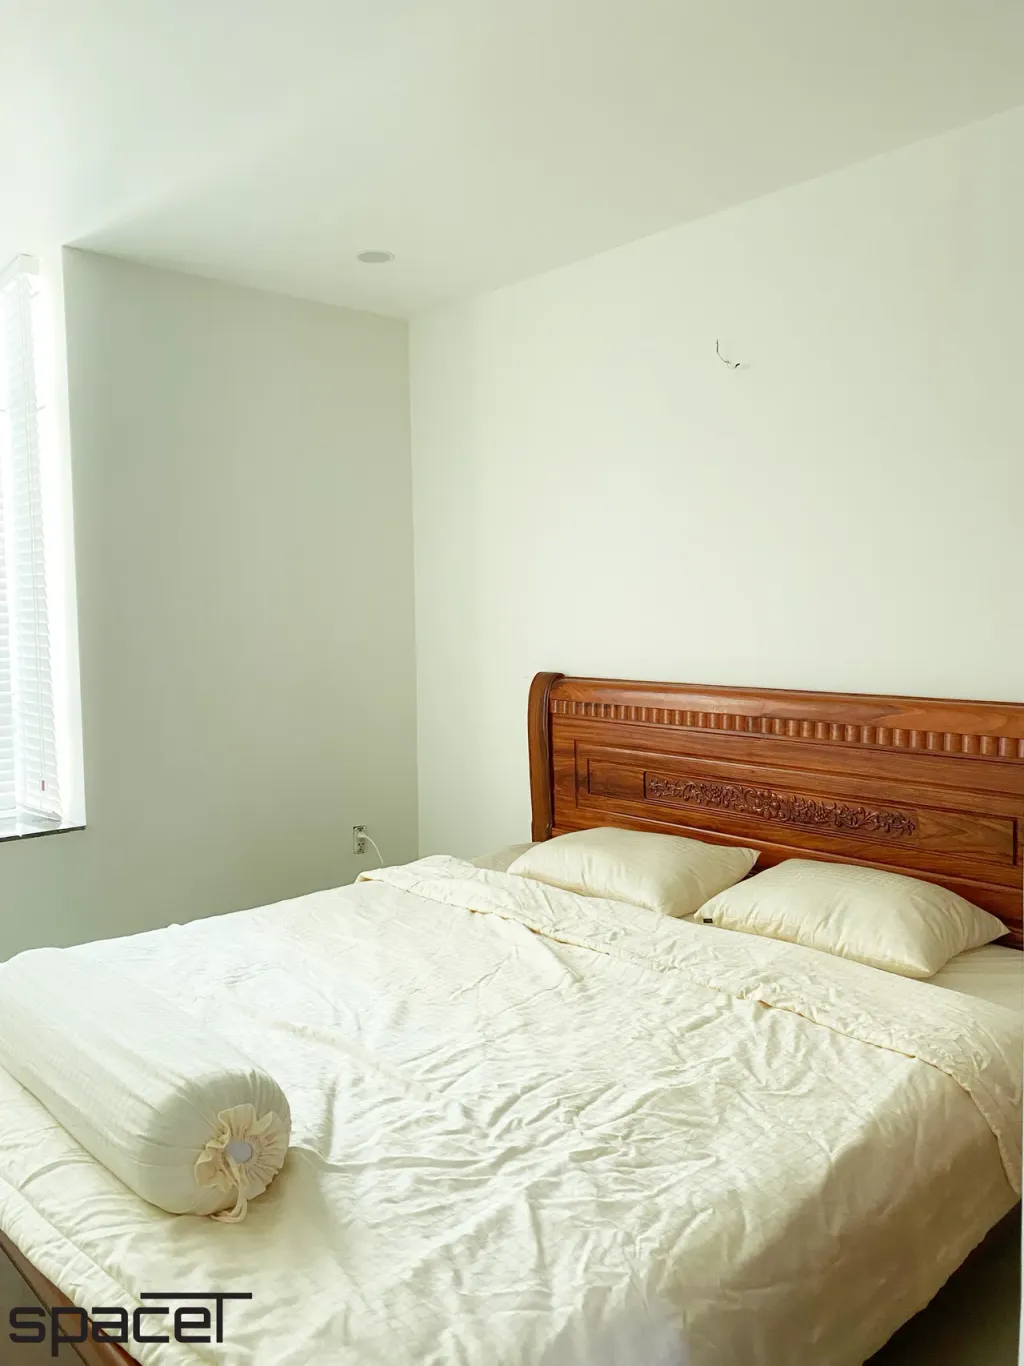 Phòng ngủ - Cải tạo Căn hộ Hoàng Anh Gia Lai 2 - Phong cách Minimalist  | Space T